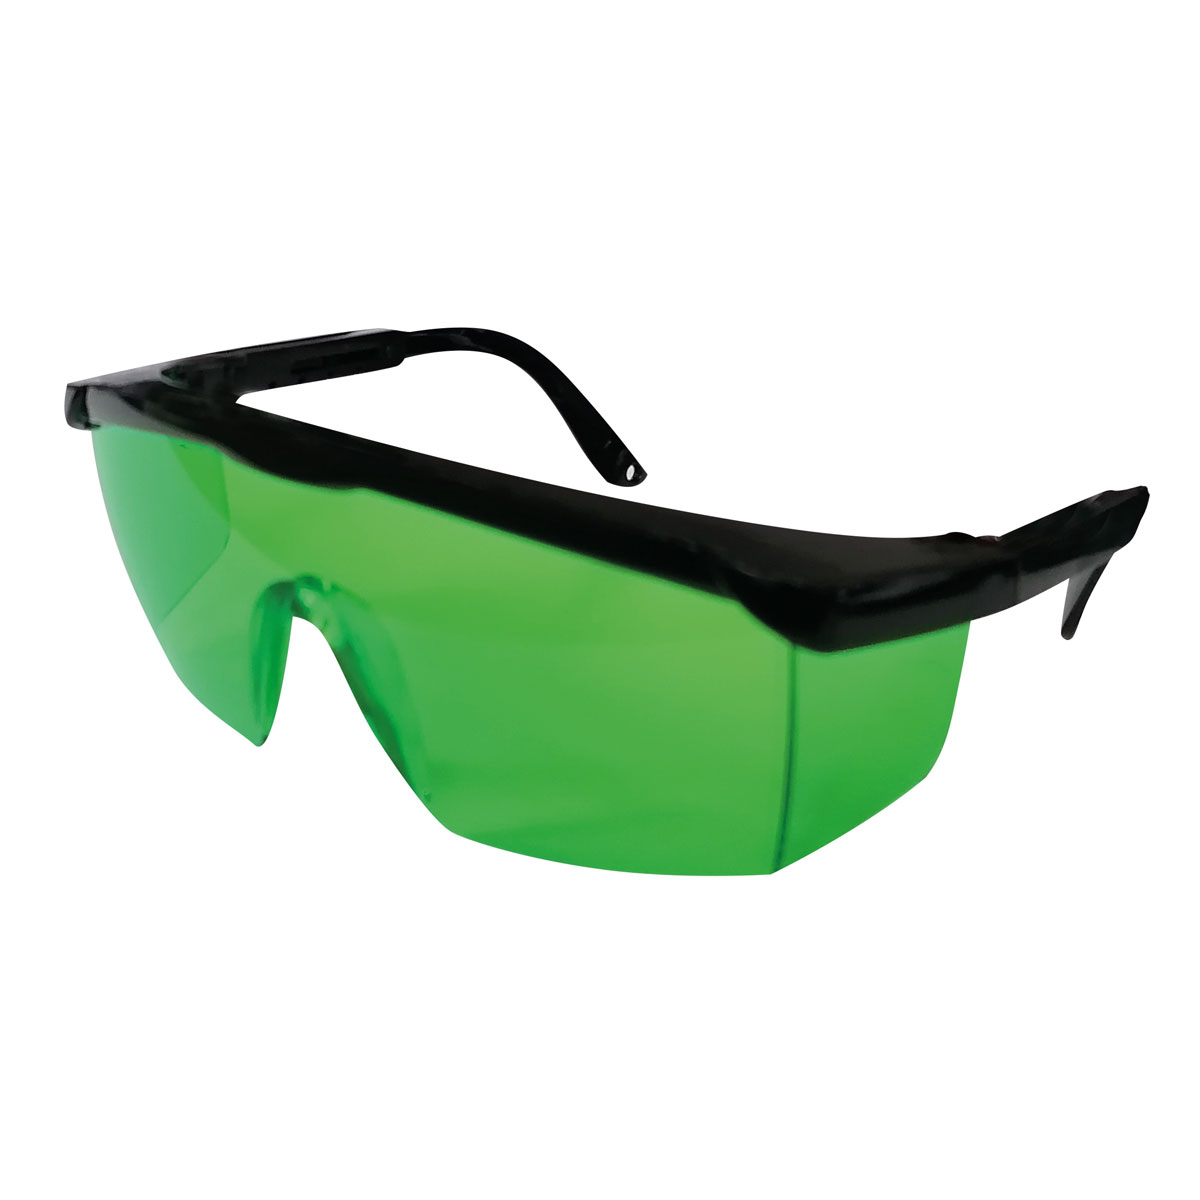 Laserbrille grün, erhöhte Sichtbarkeit von Laser-Strahlen